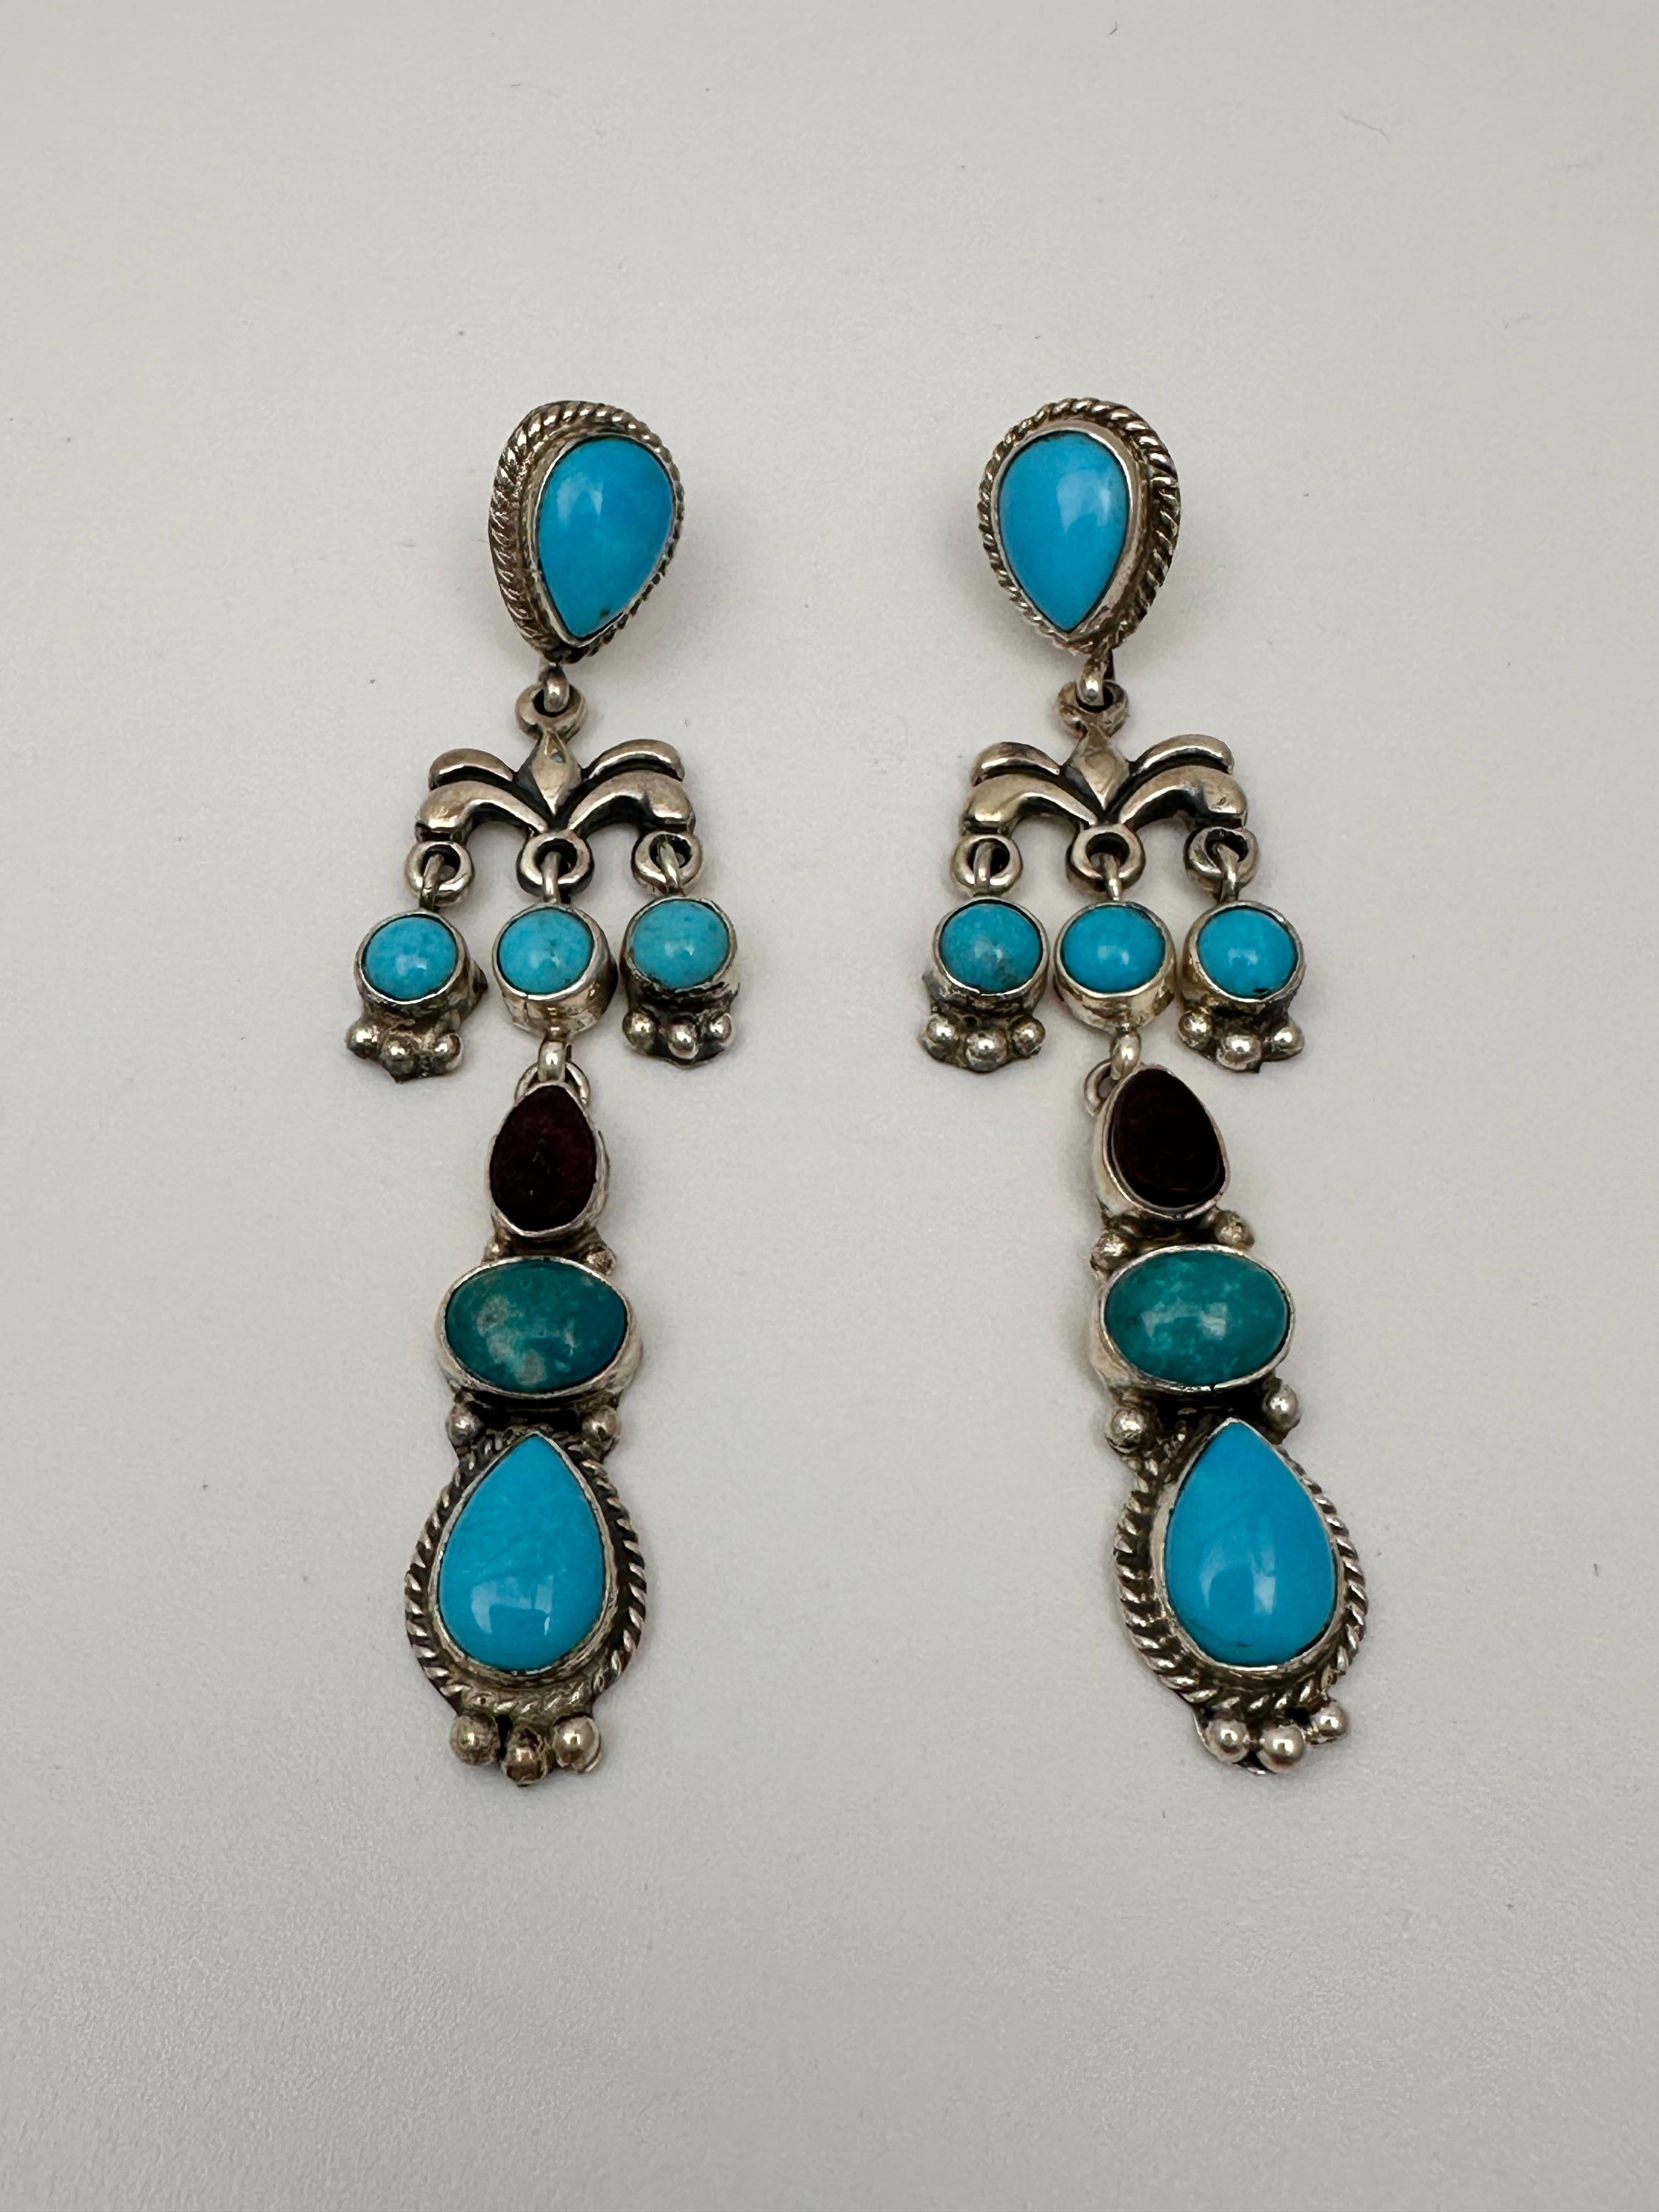 Boucles d'oreilles pendantes en argent Navajo Fajitas .925 Turquoise Sugilite 
mesure environ 3/4